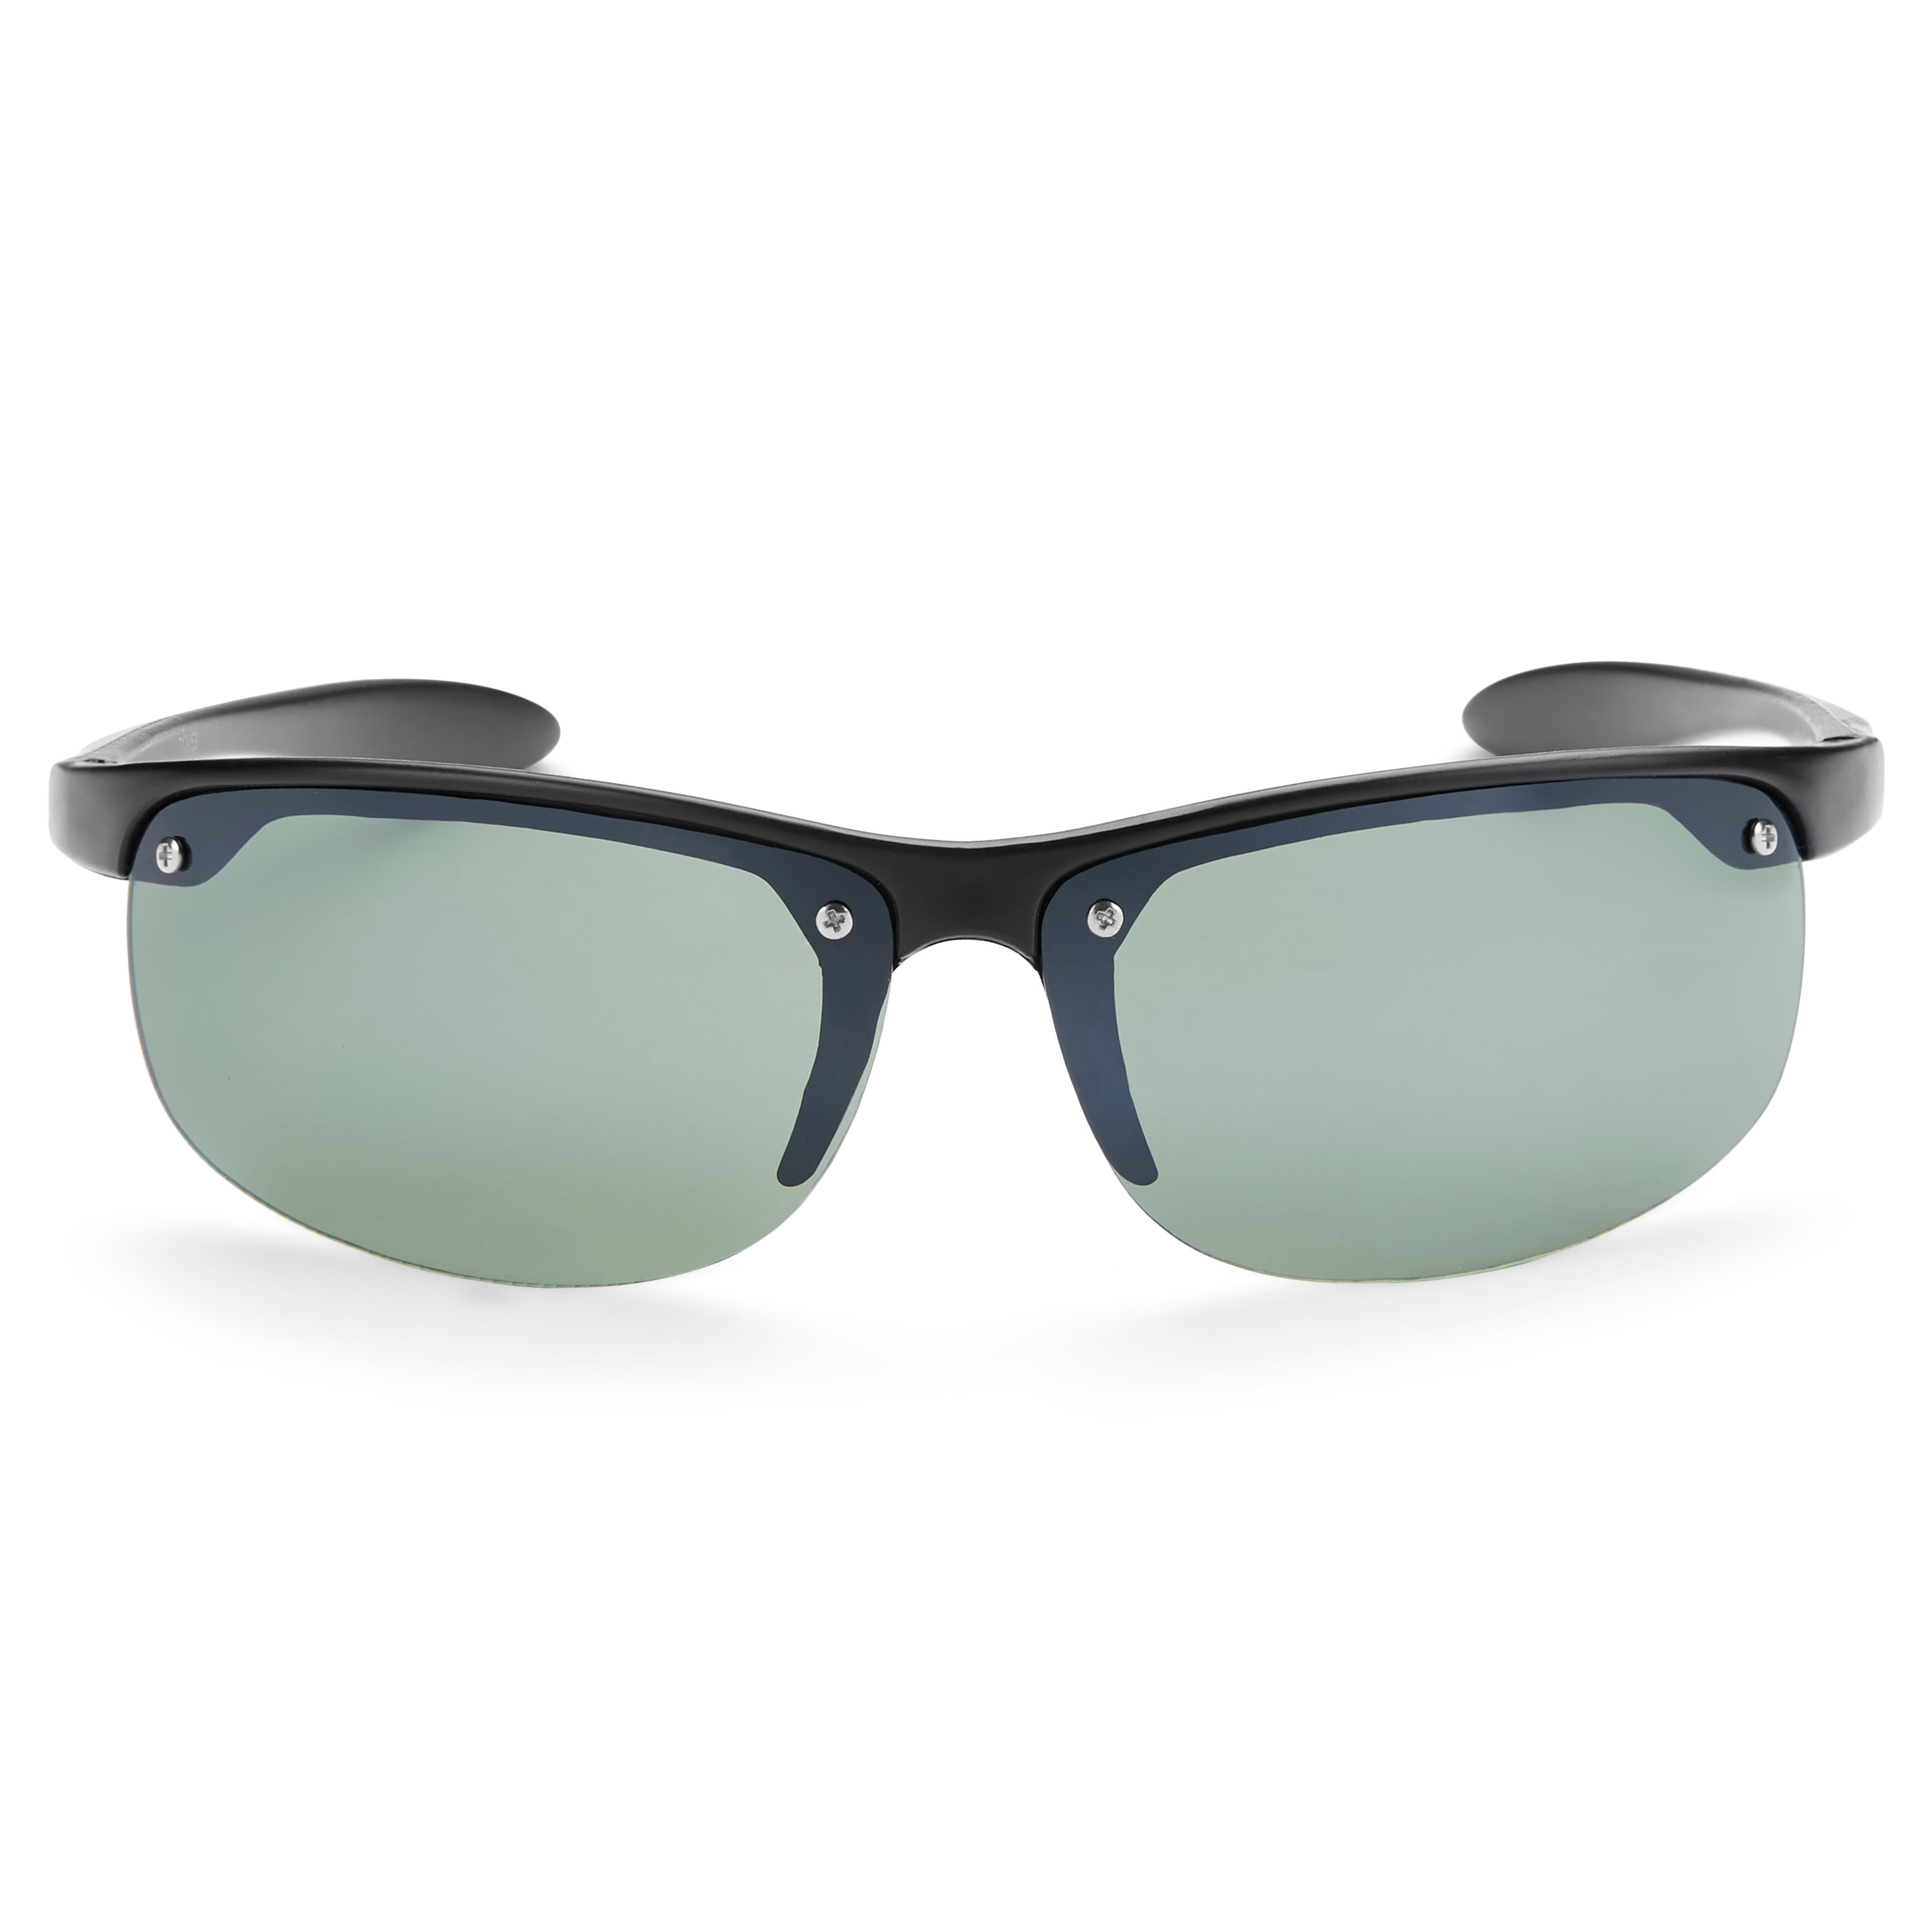 Fekete keretes & zöld lencsés sport napszemüveg